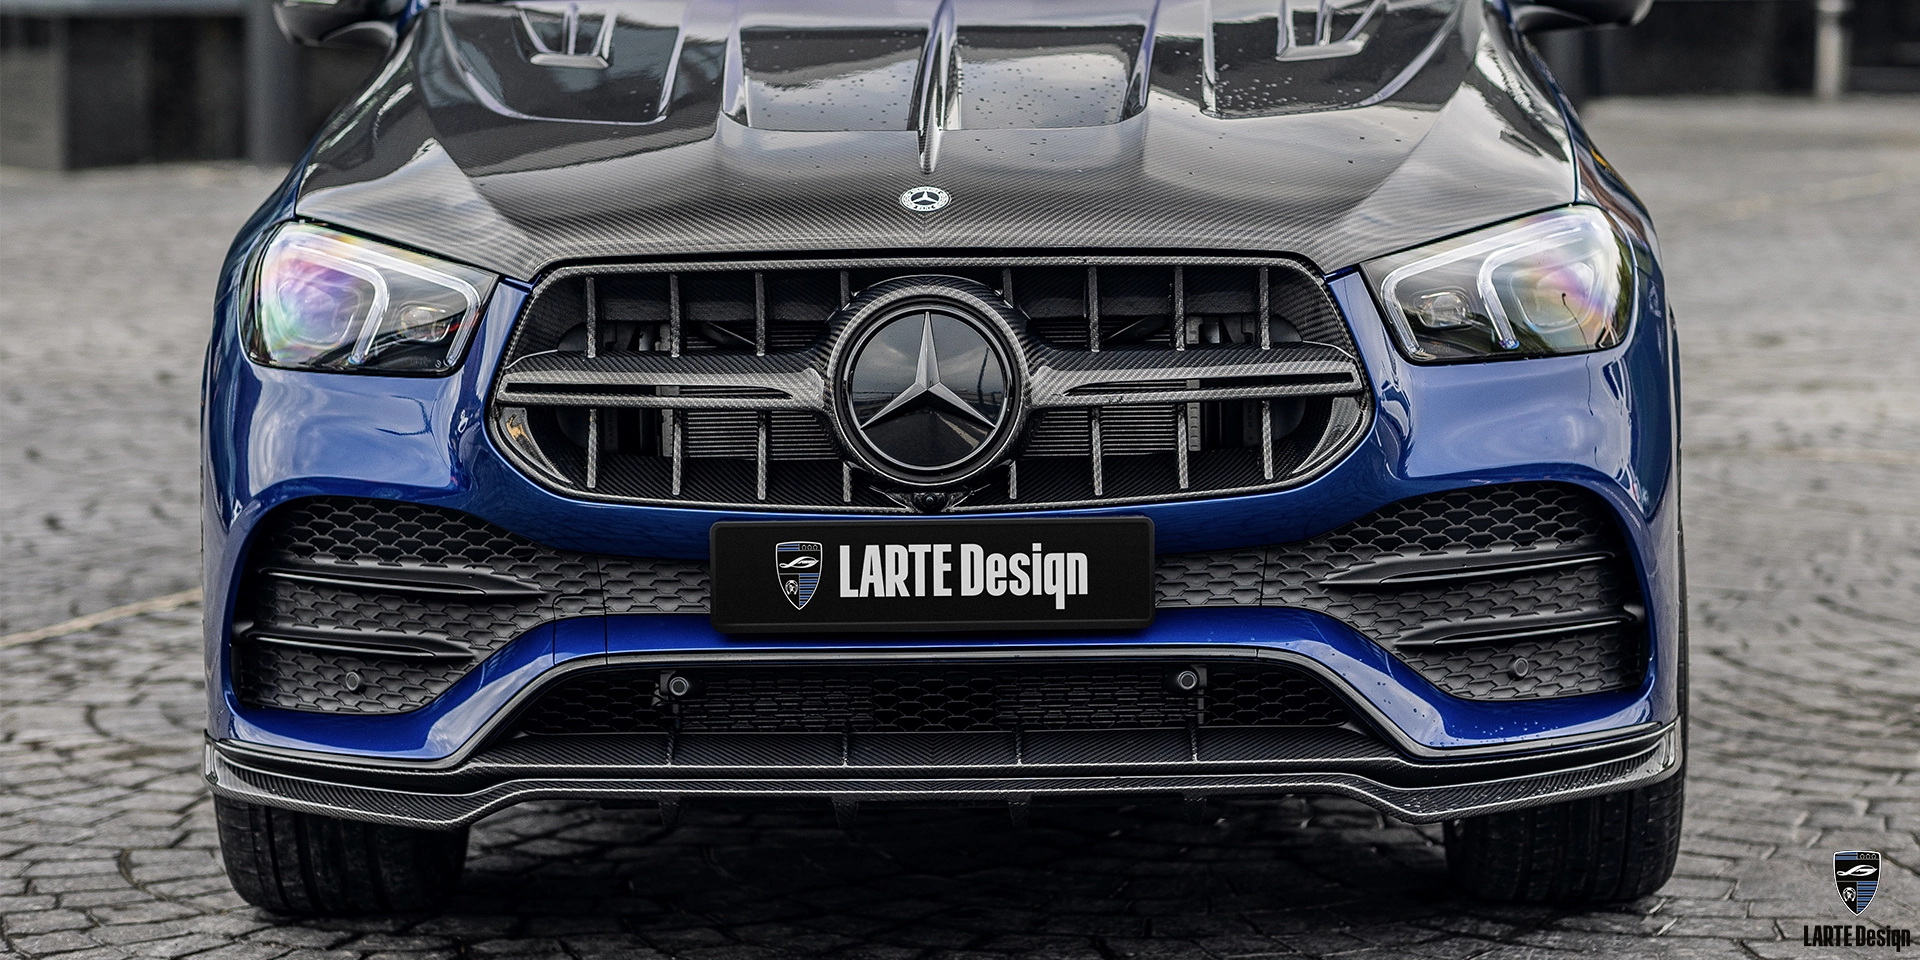 Kaufen Sie einen Frontstoßstangensplitter aus Kohlefaser für Mercedes-Benz GLE Coupe 53 4MATIC+ C292 Blue Gem